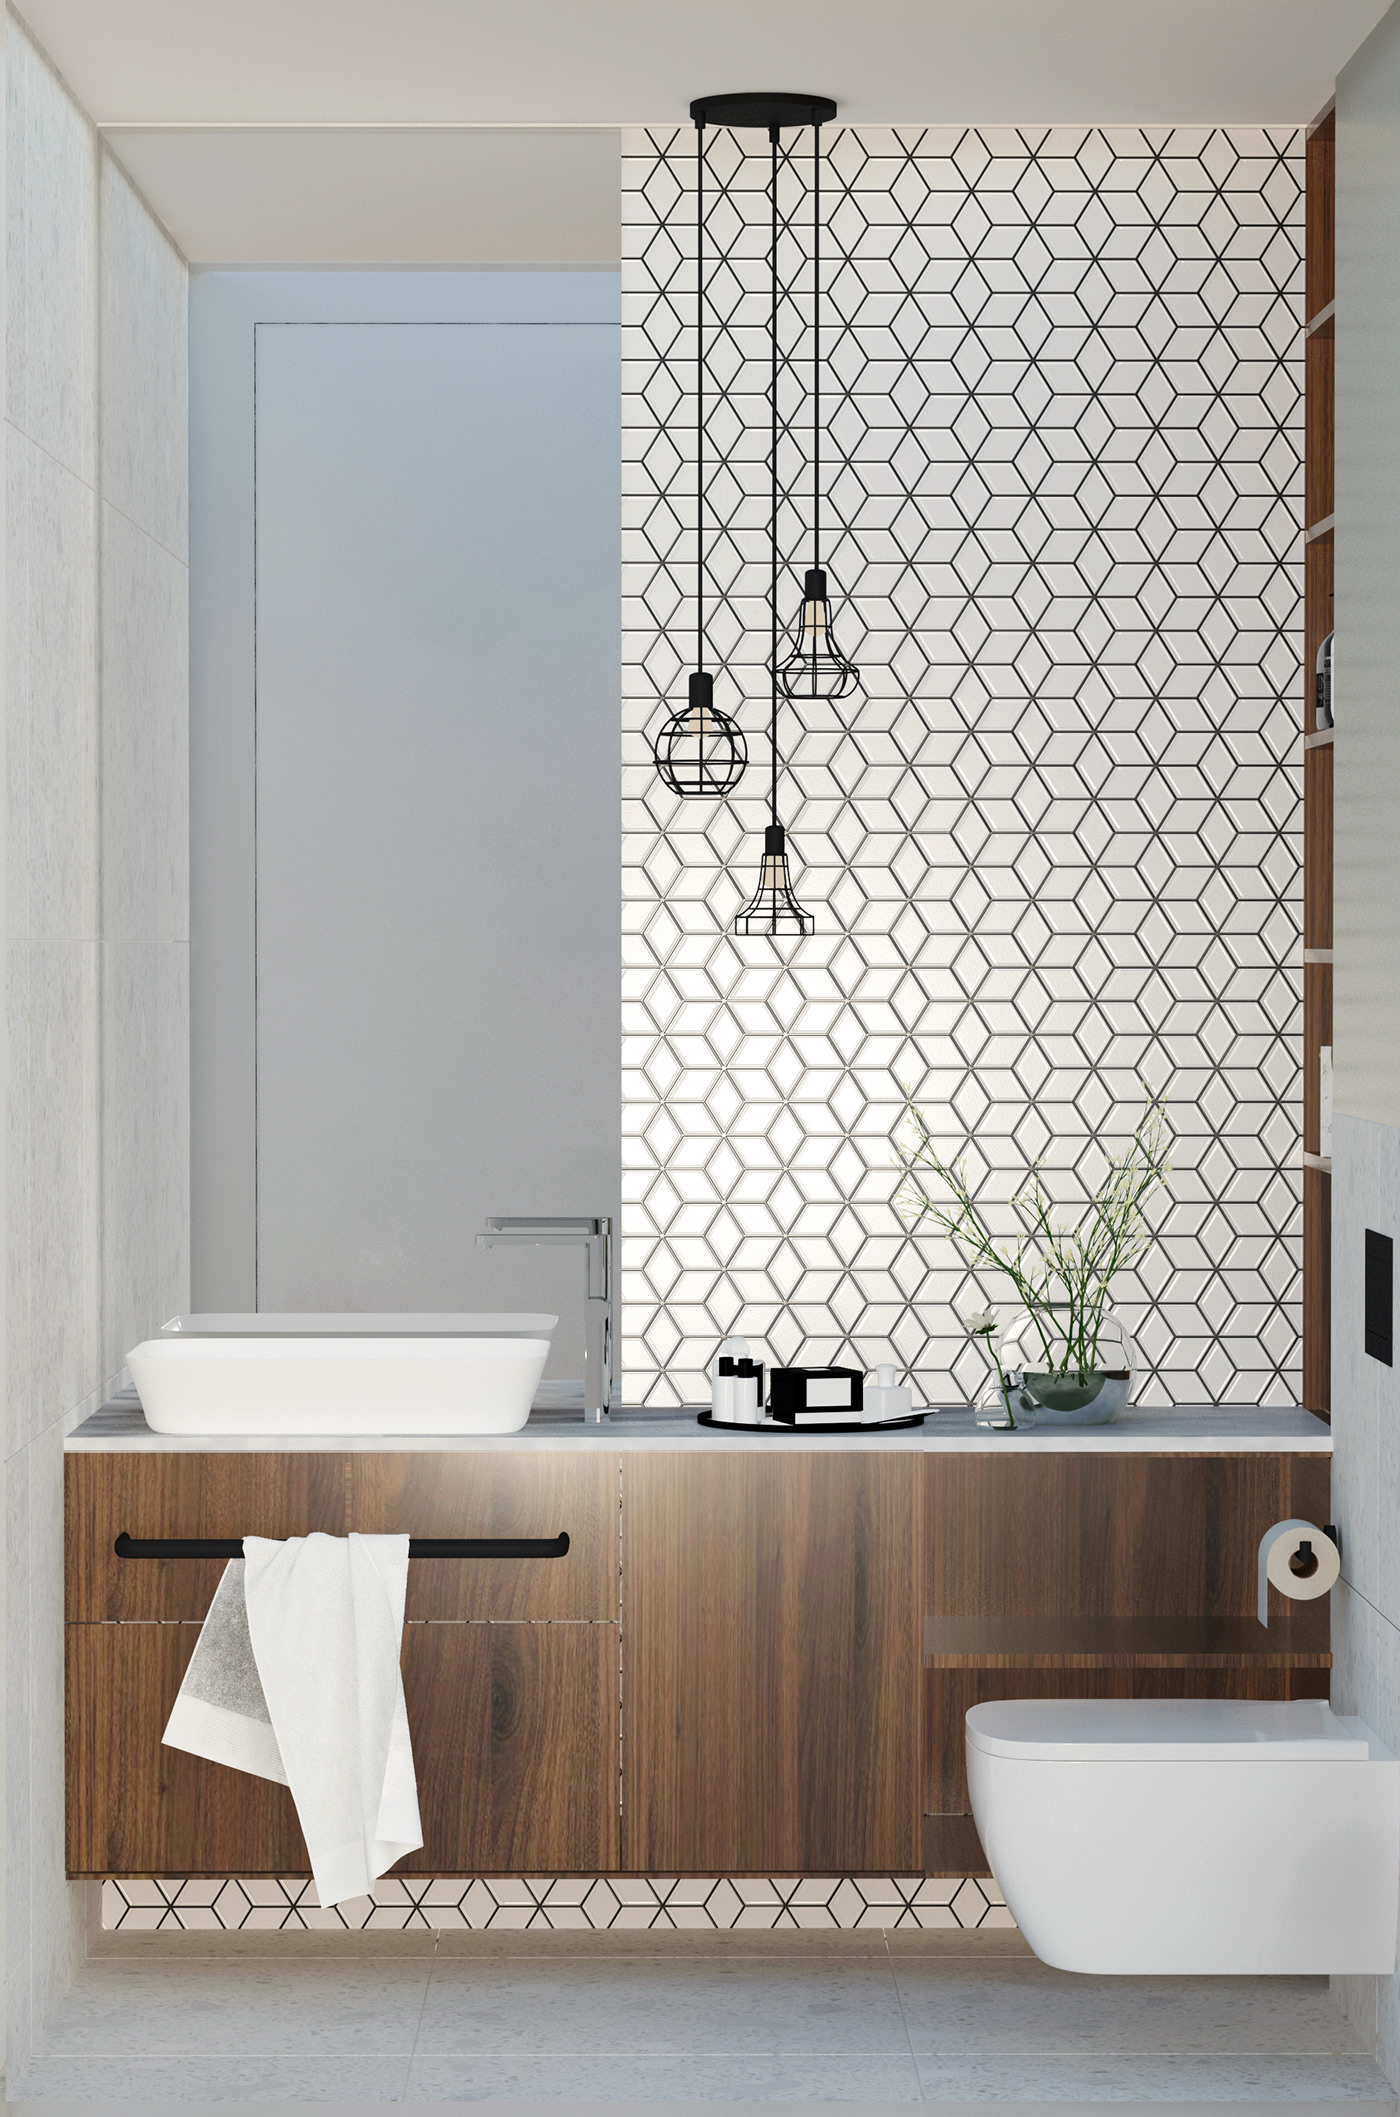 3D 3ds max architecture archviz bathroom interior design  modern Render visualization vray